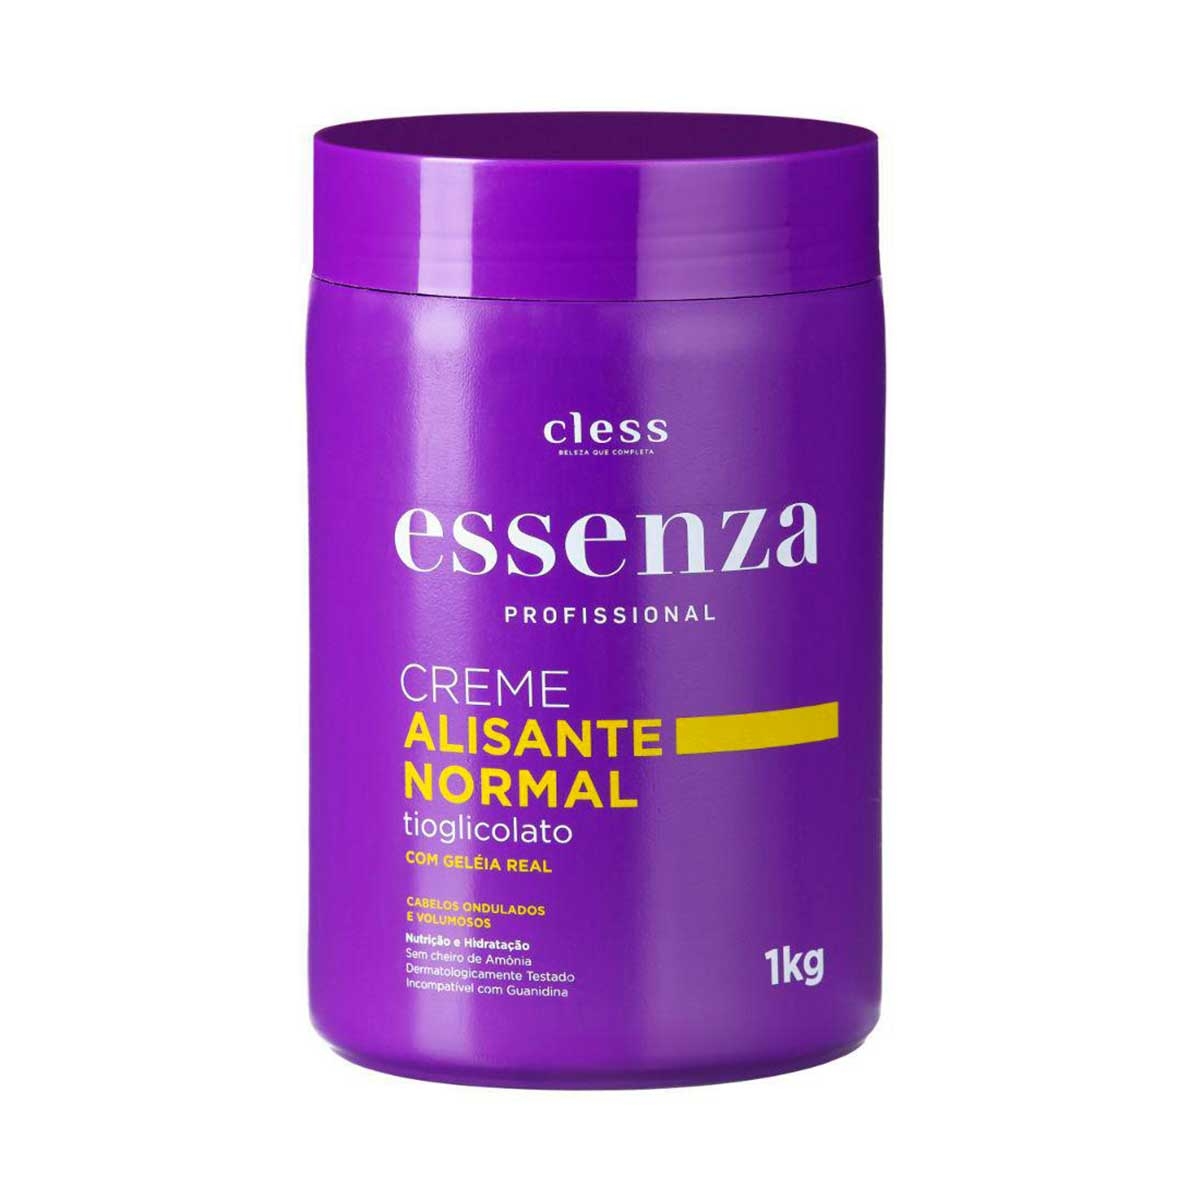 Creme Alisante Essenza Profissional Normal com 1Kg 1Kg